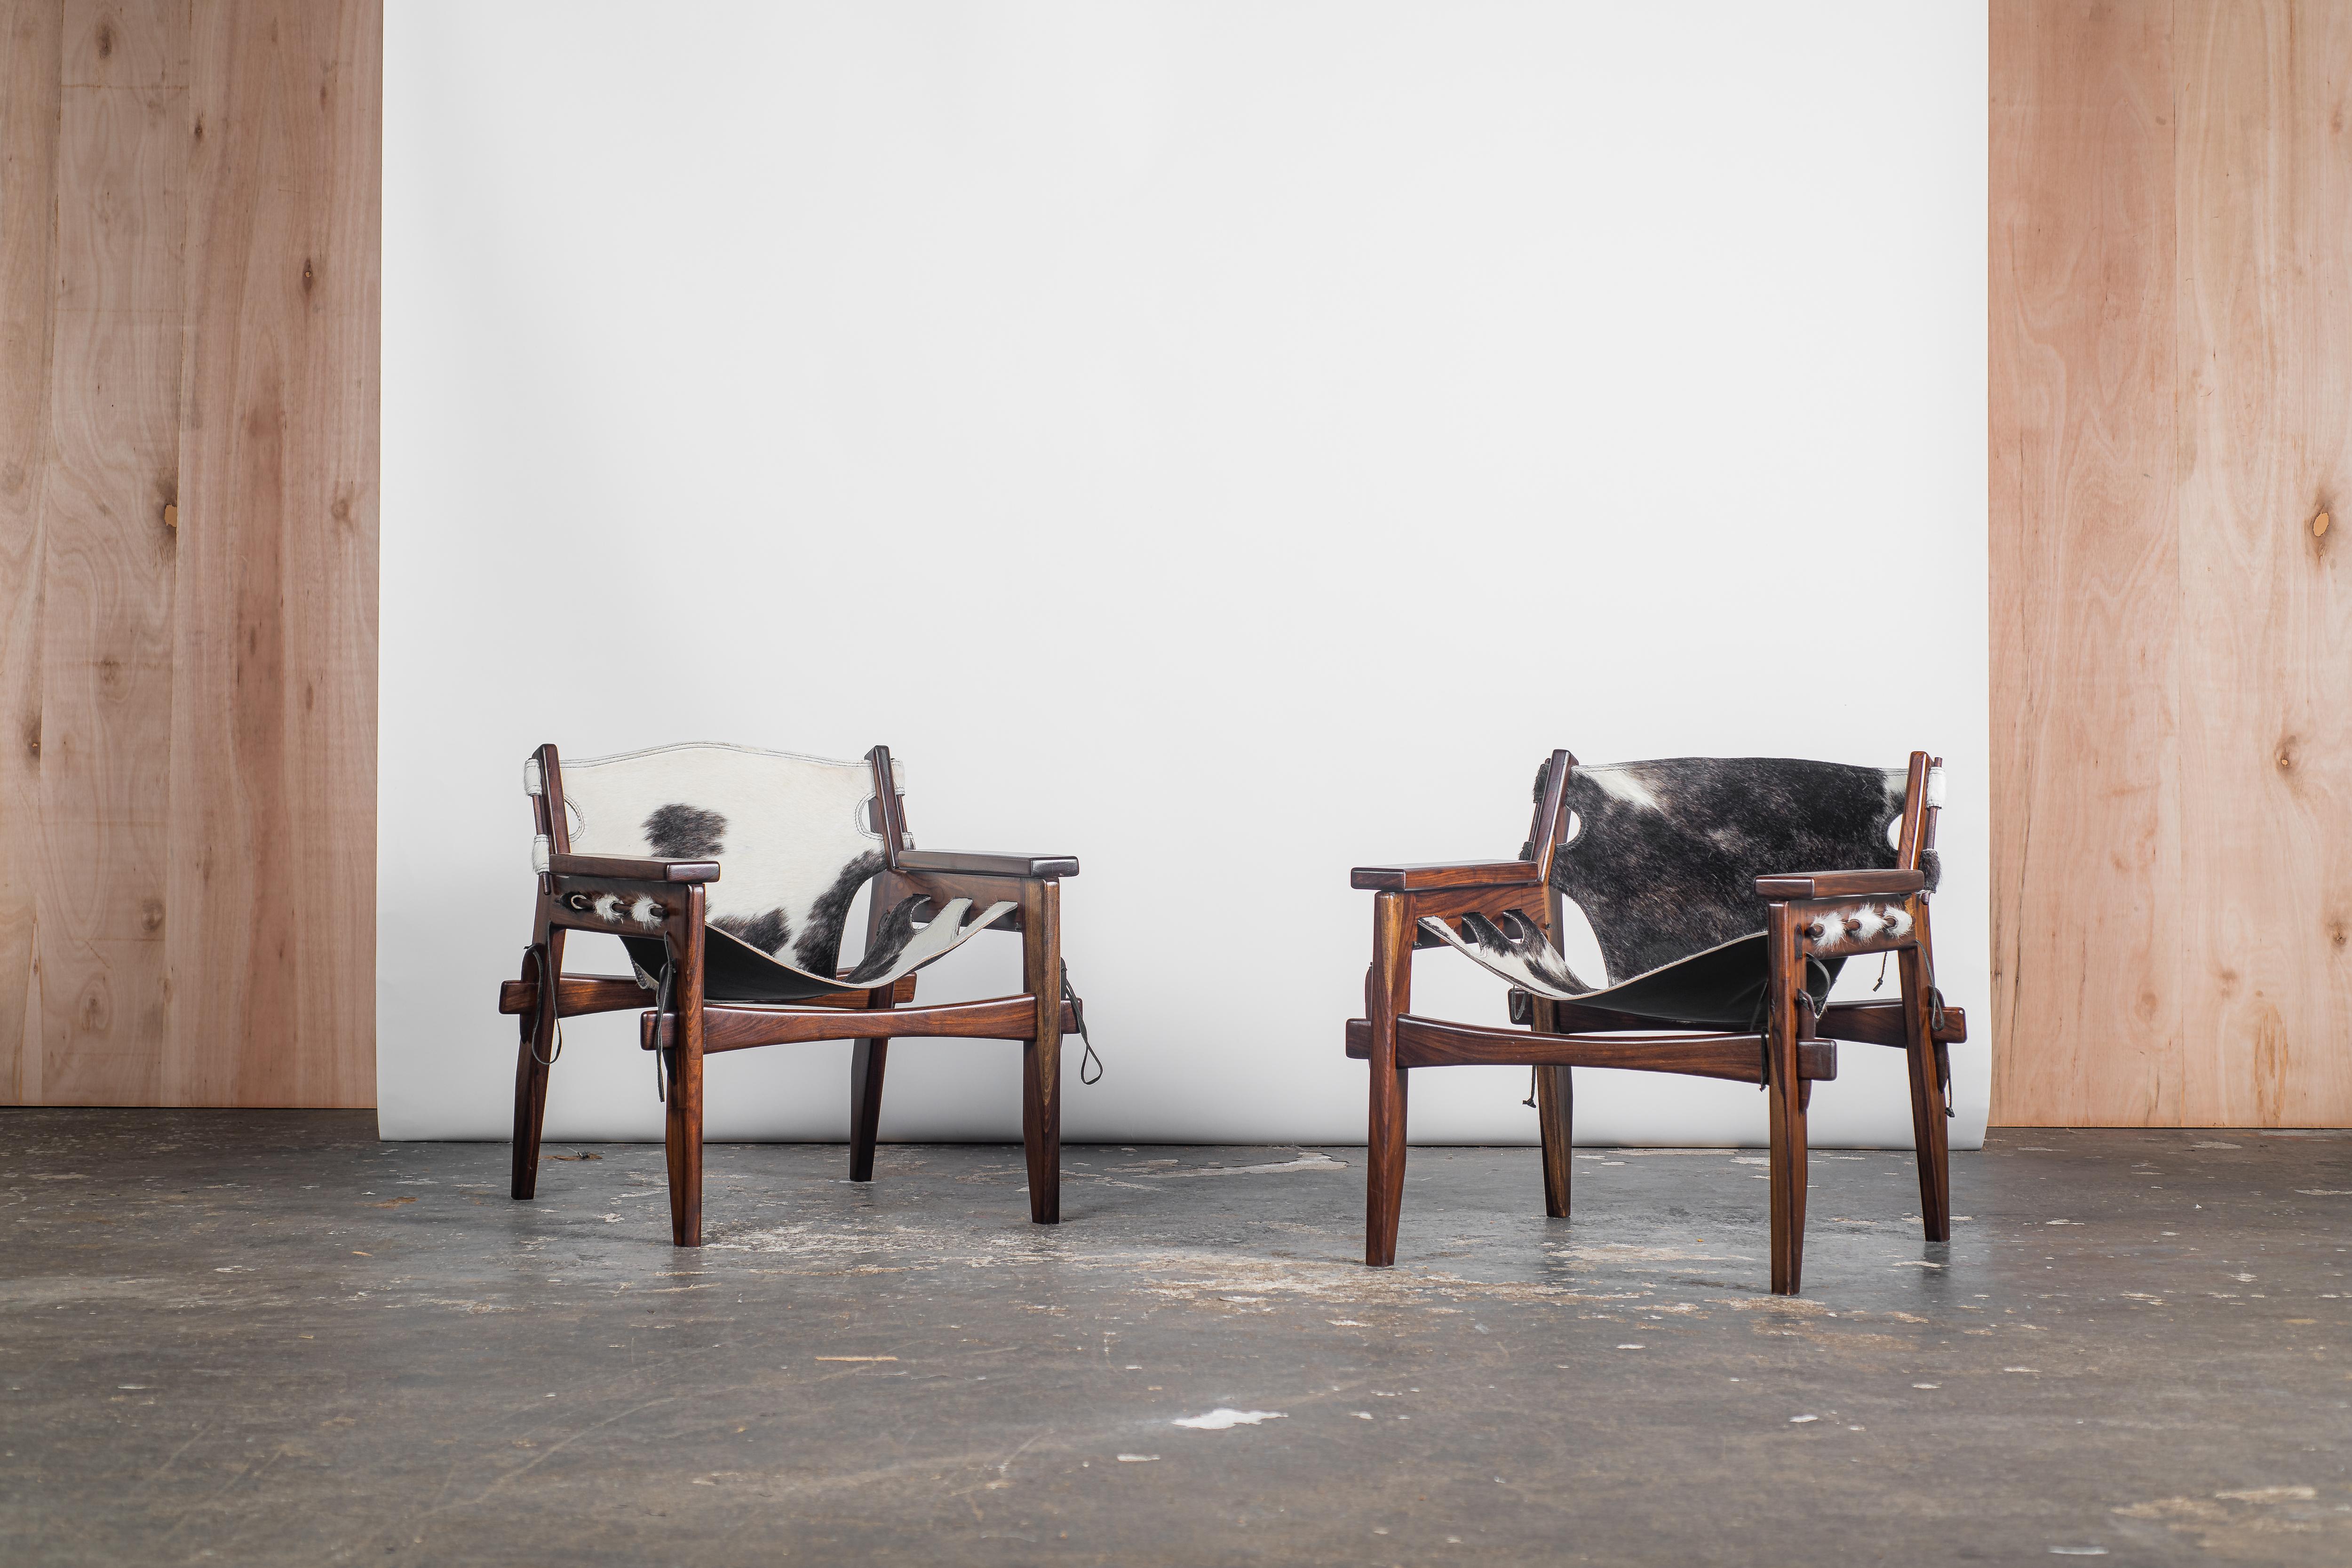 Le fauteuil Kilin, sommet de l'ingéniosité artistique conçu par le designer visionnaire Sergio Rodrigues, incarne une fusion exquise entre la brillance esthétique et l'élégance fonctionnelle. Avec un engagement inébranlable pour un savoir-faire